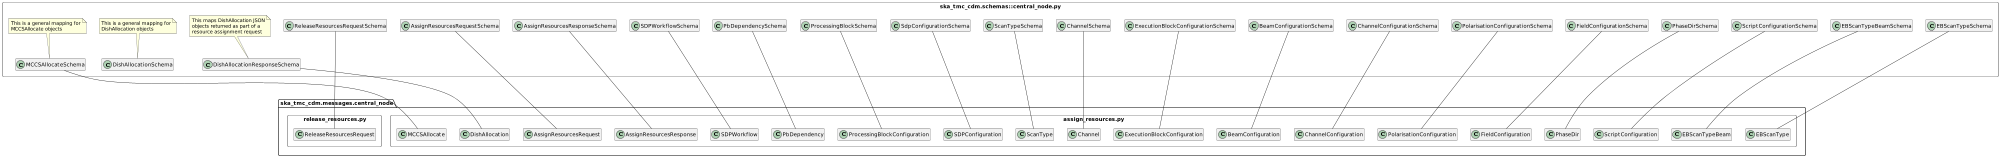 CentralNode schema